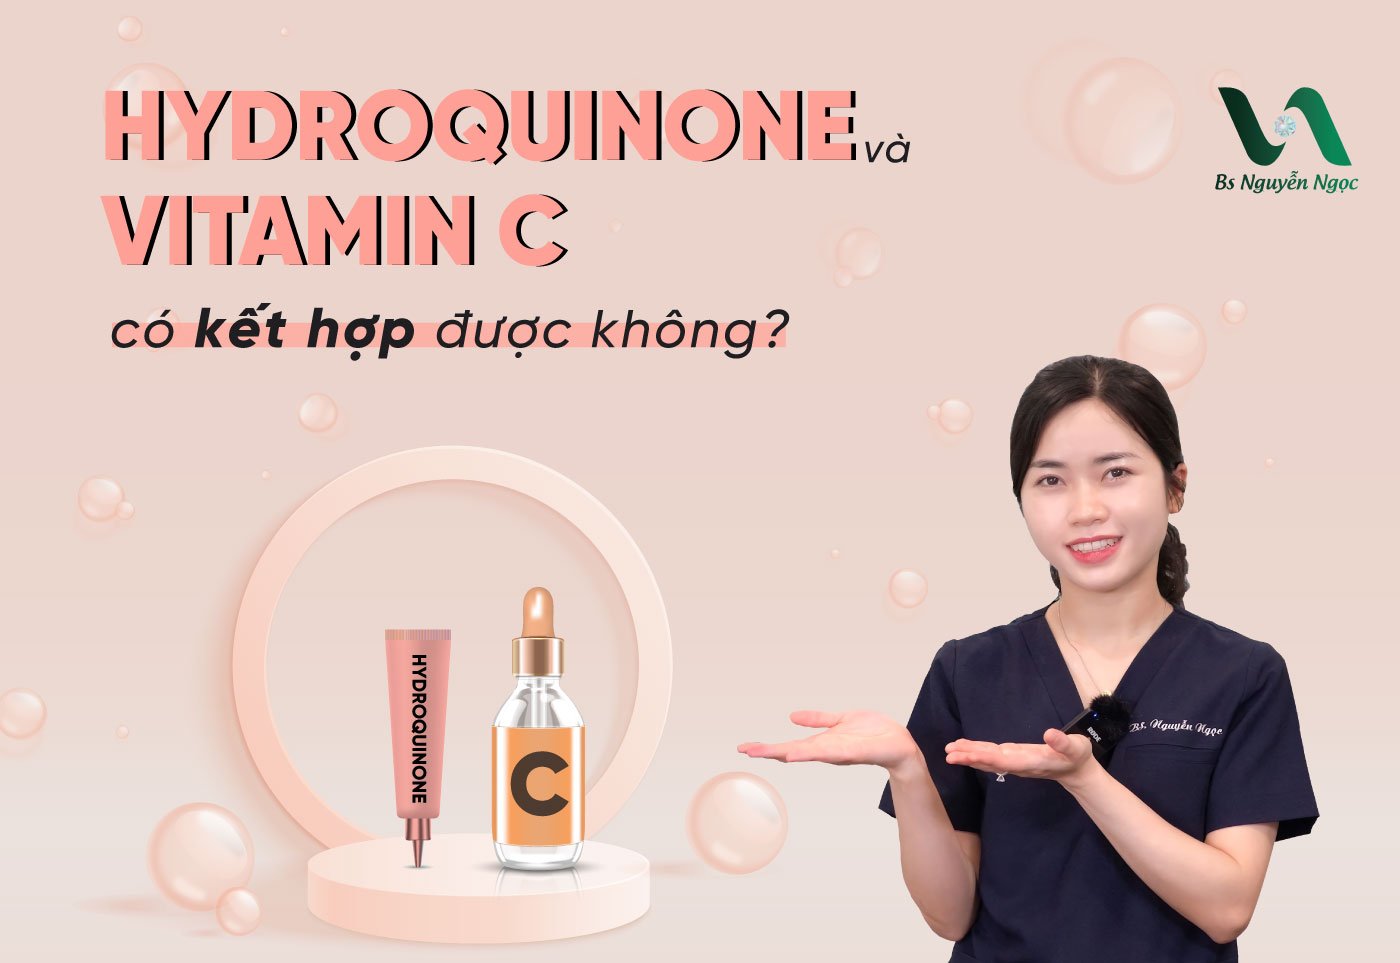 Hydroquinone và Vitamin C có kết hợp được không?